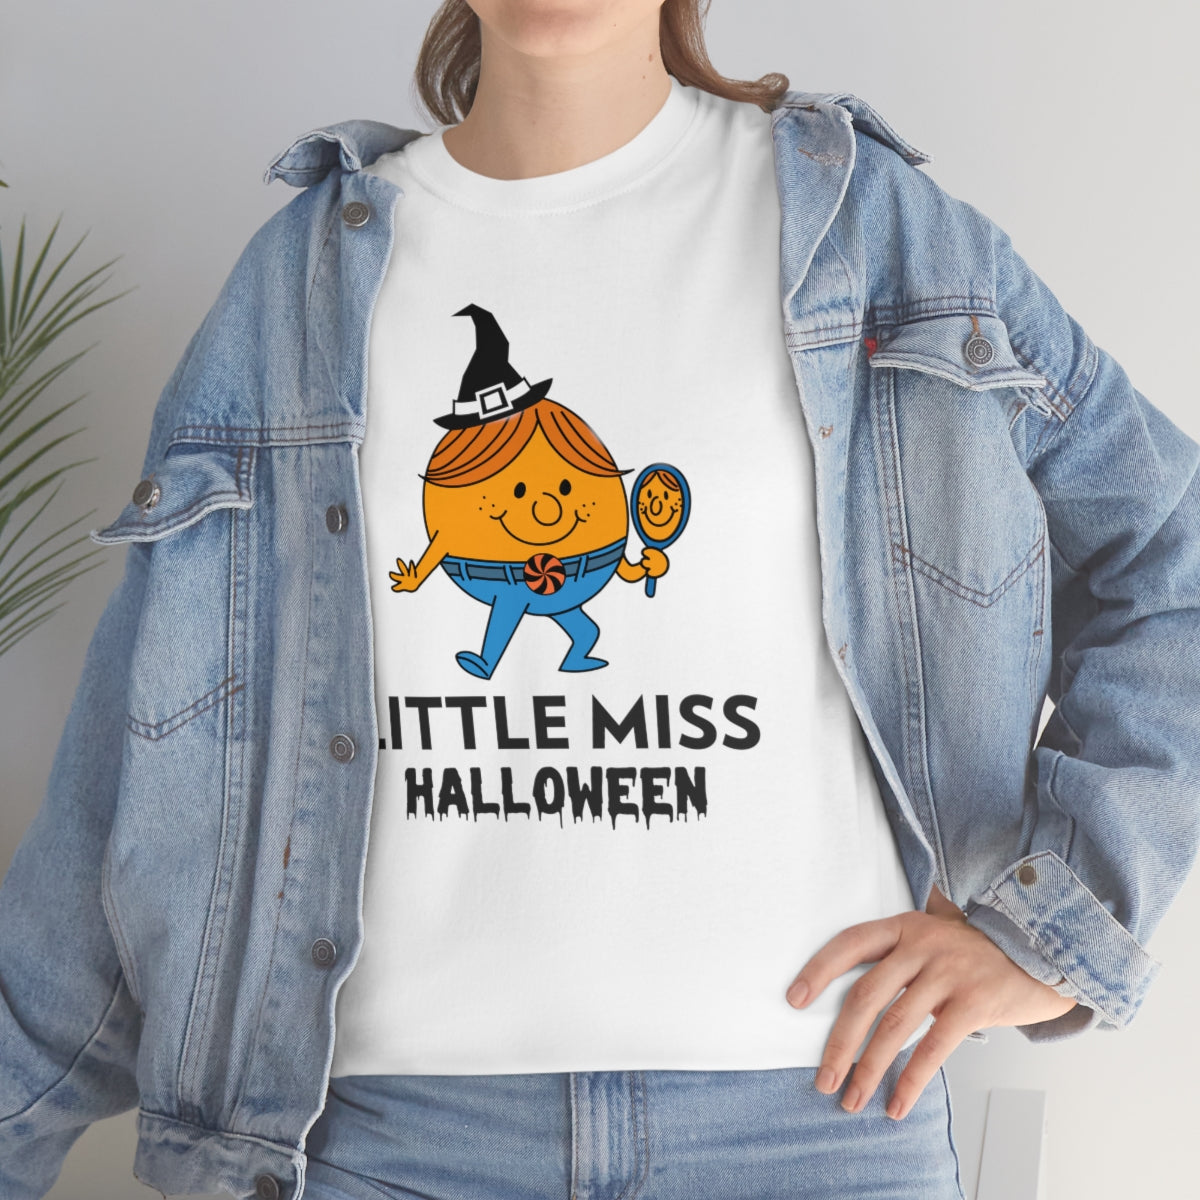 Little Miss Halloween Tee